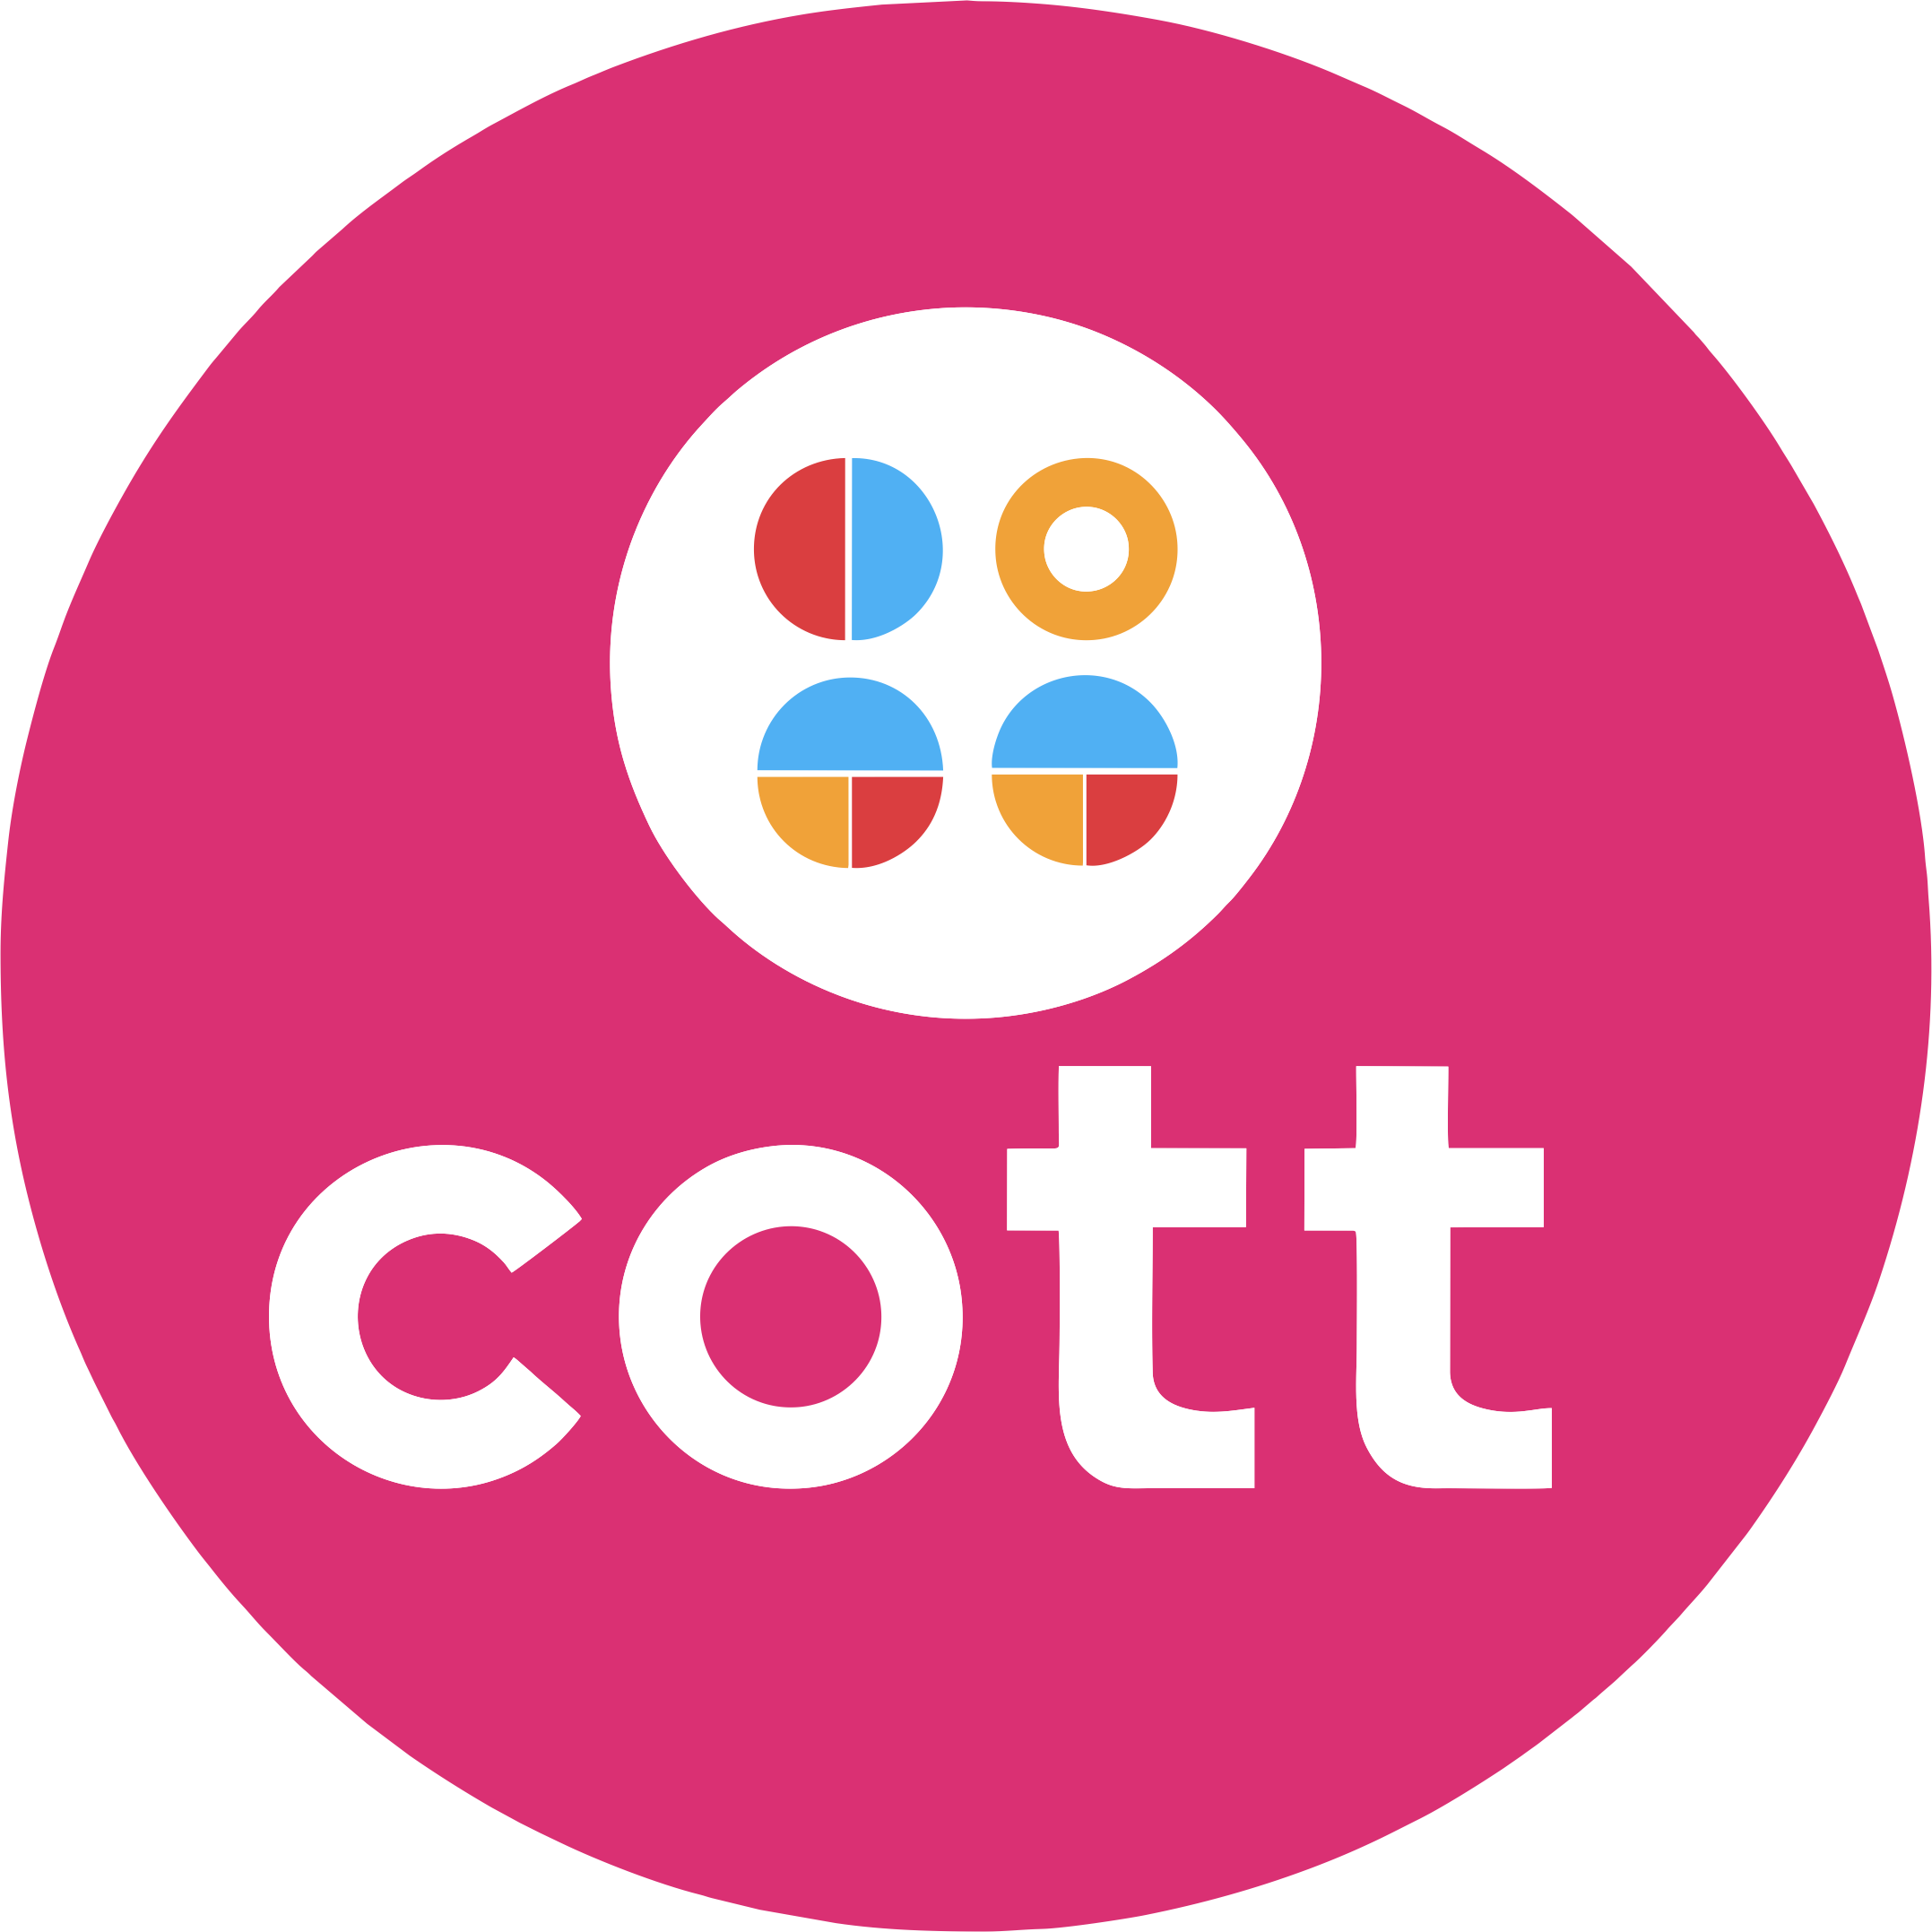 Cott